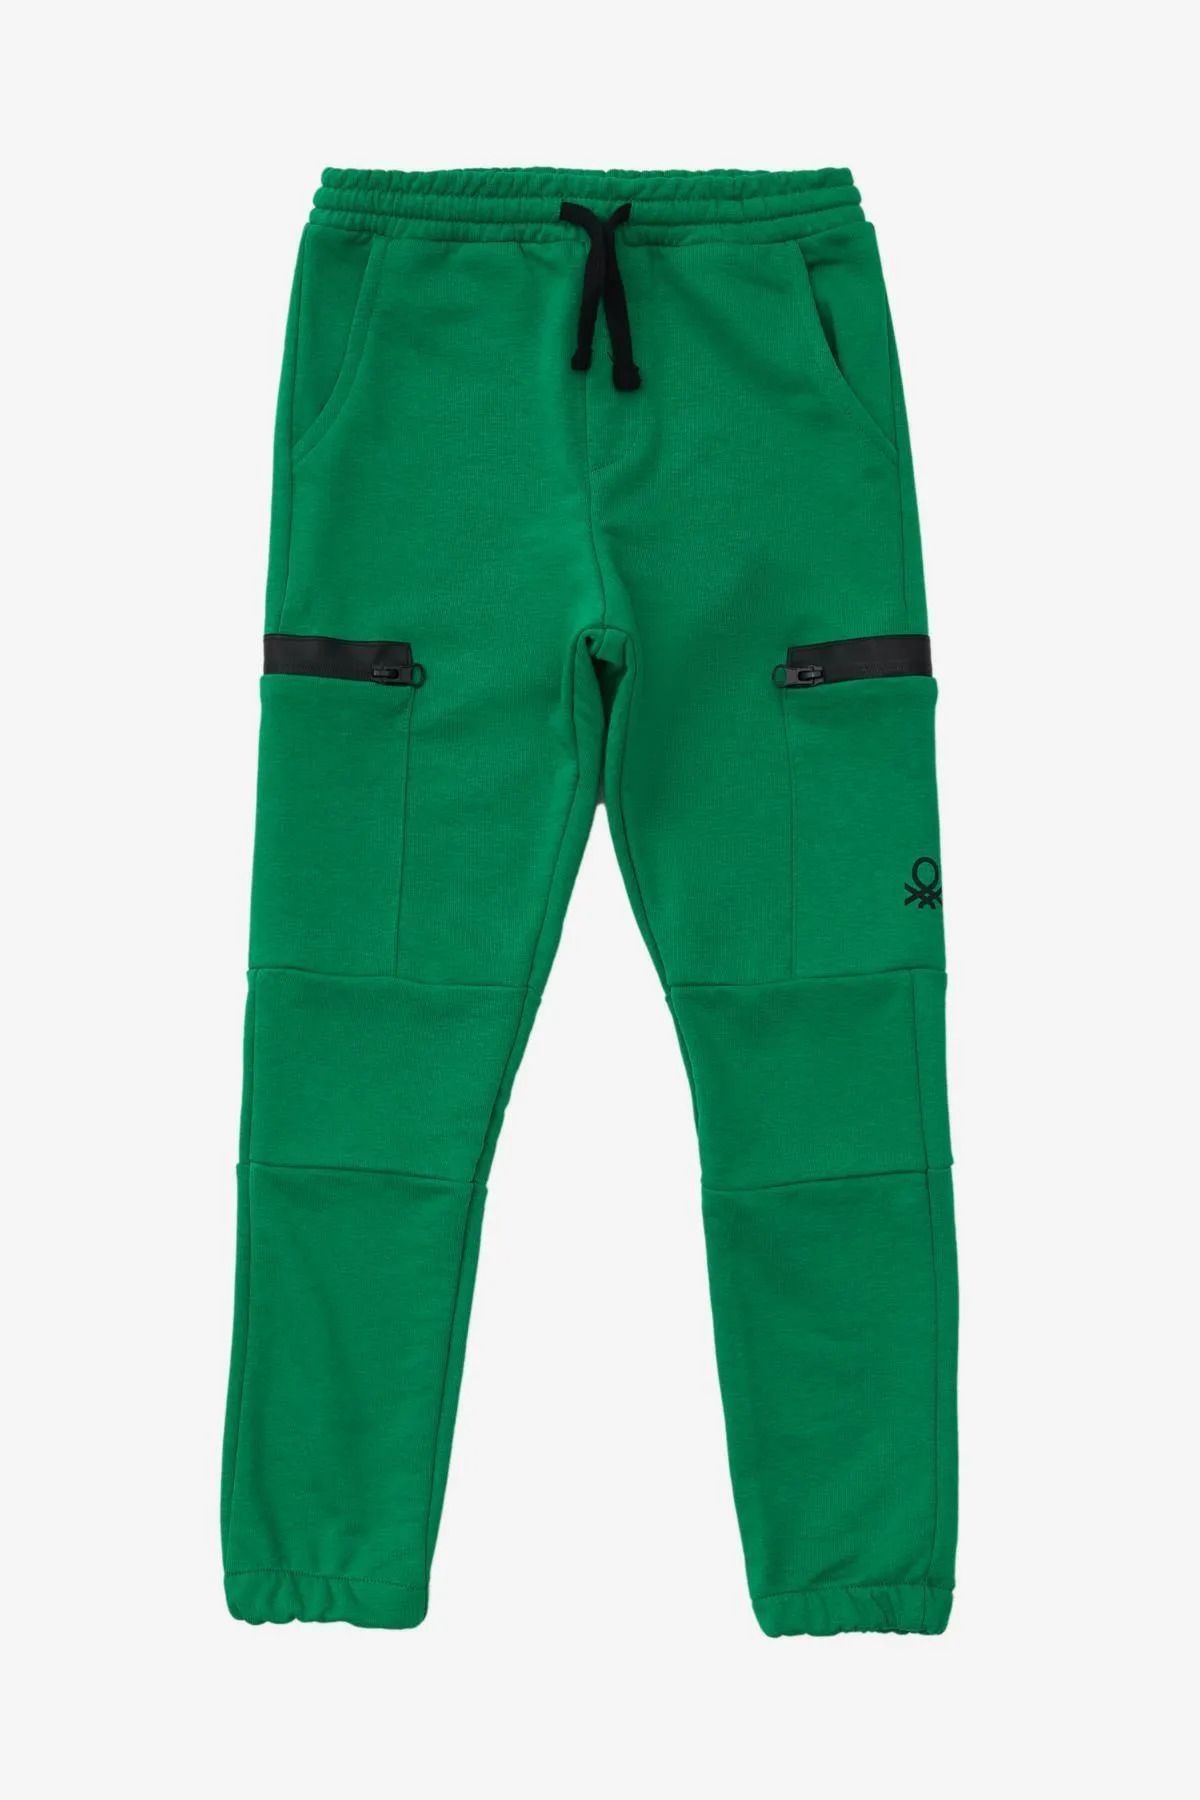 Benetton Erkek Çocuk Jogger Pantolon - Yeşil